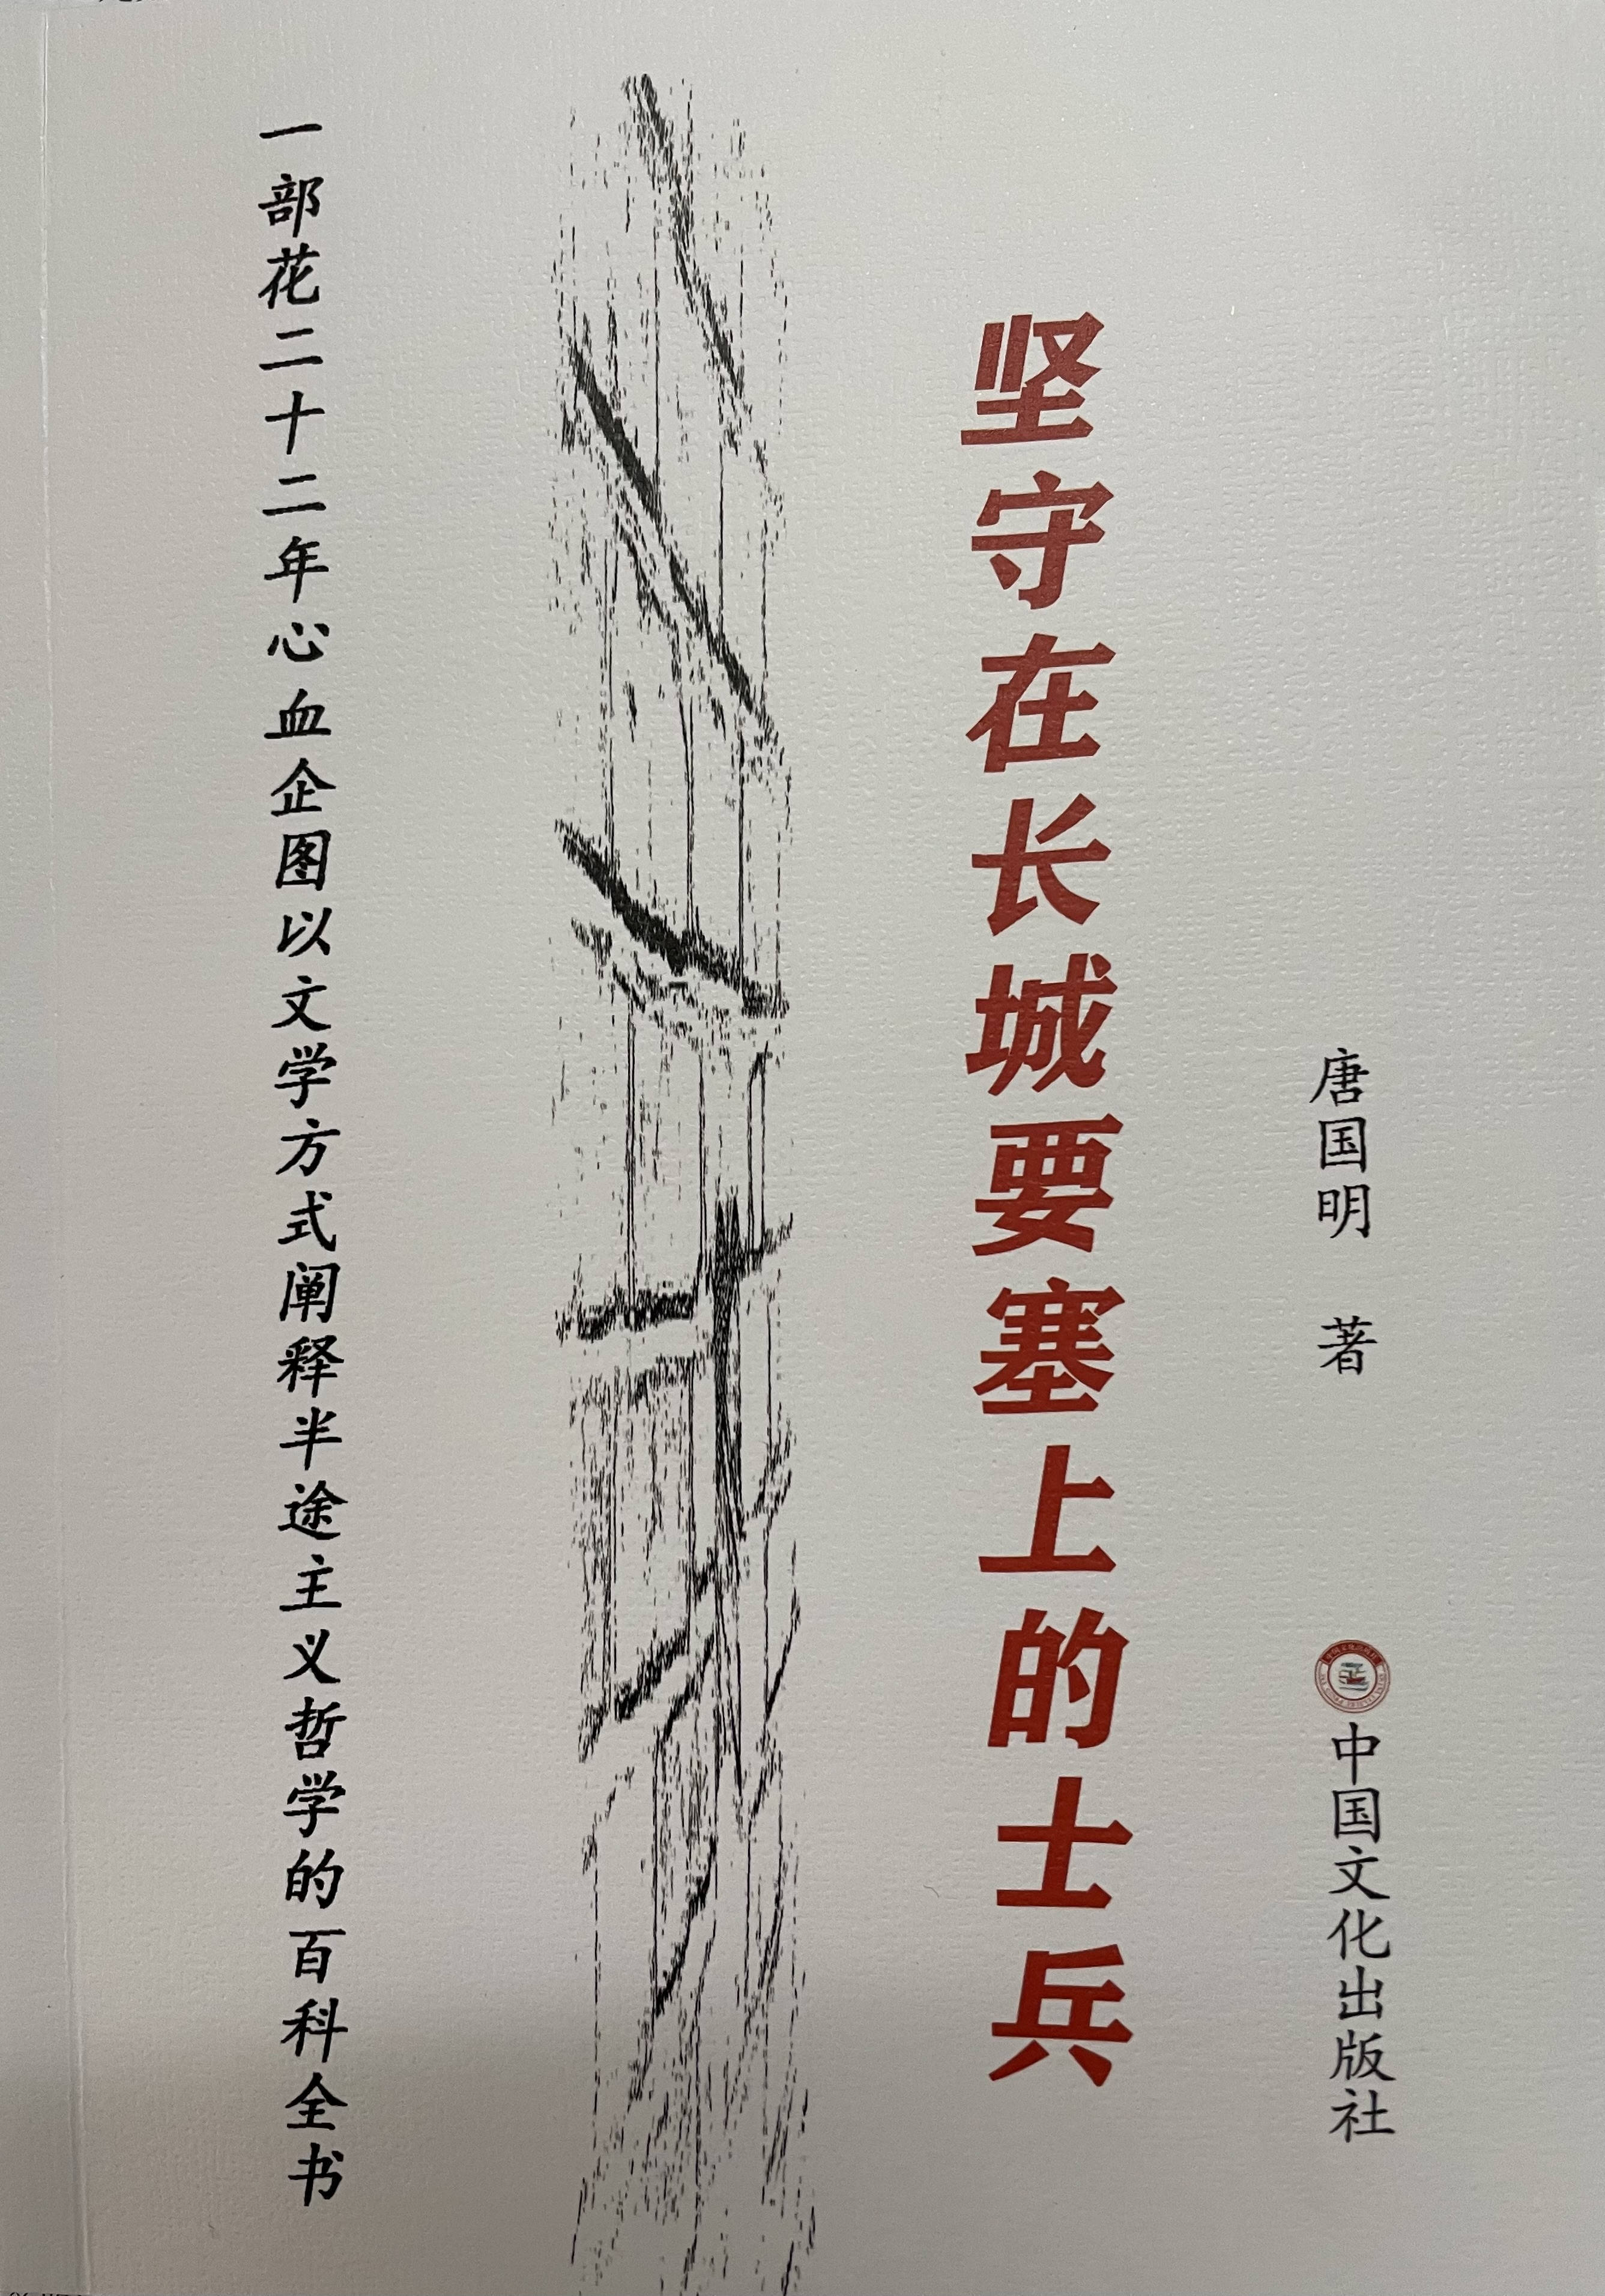 唐国明诗意流长篇小说《坚守在长城要塞上的兵士》第30、31、32节